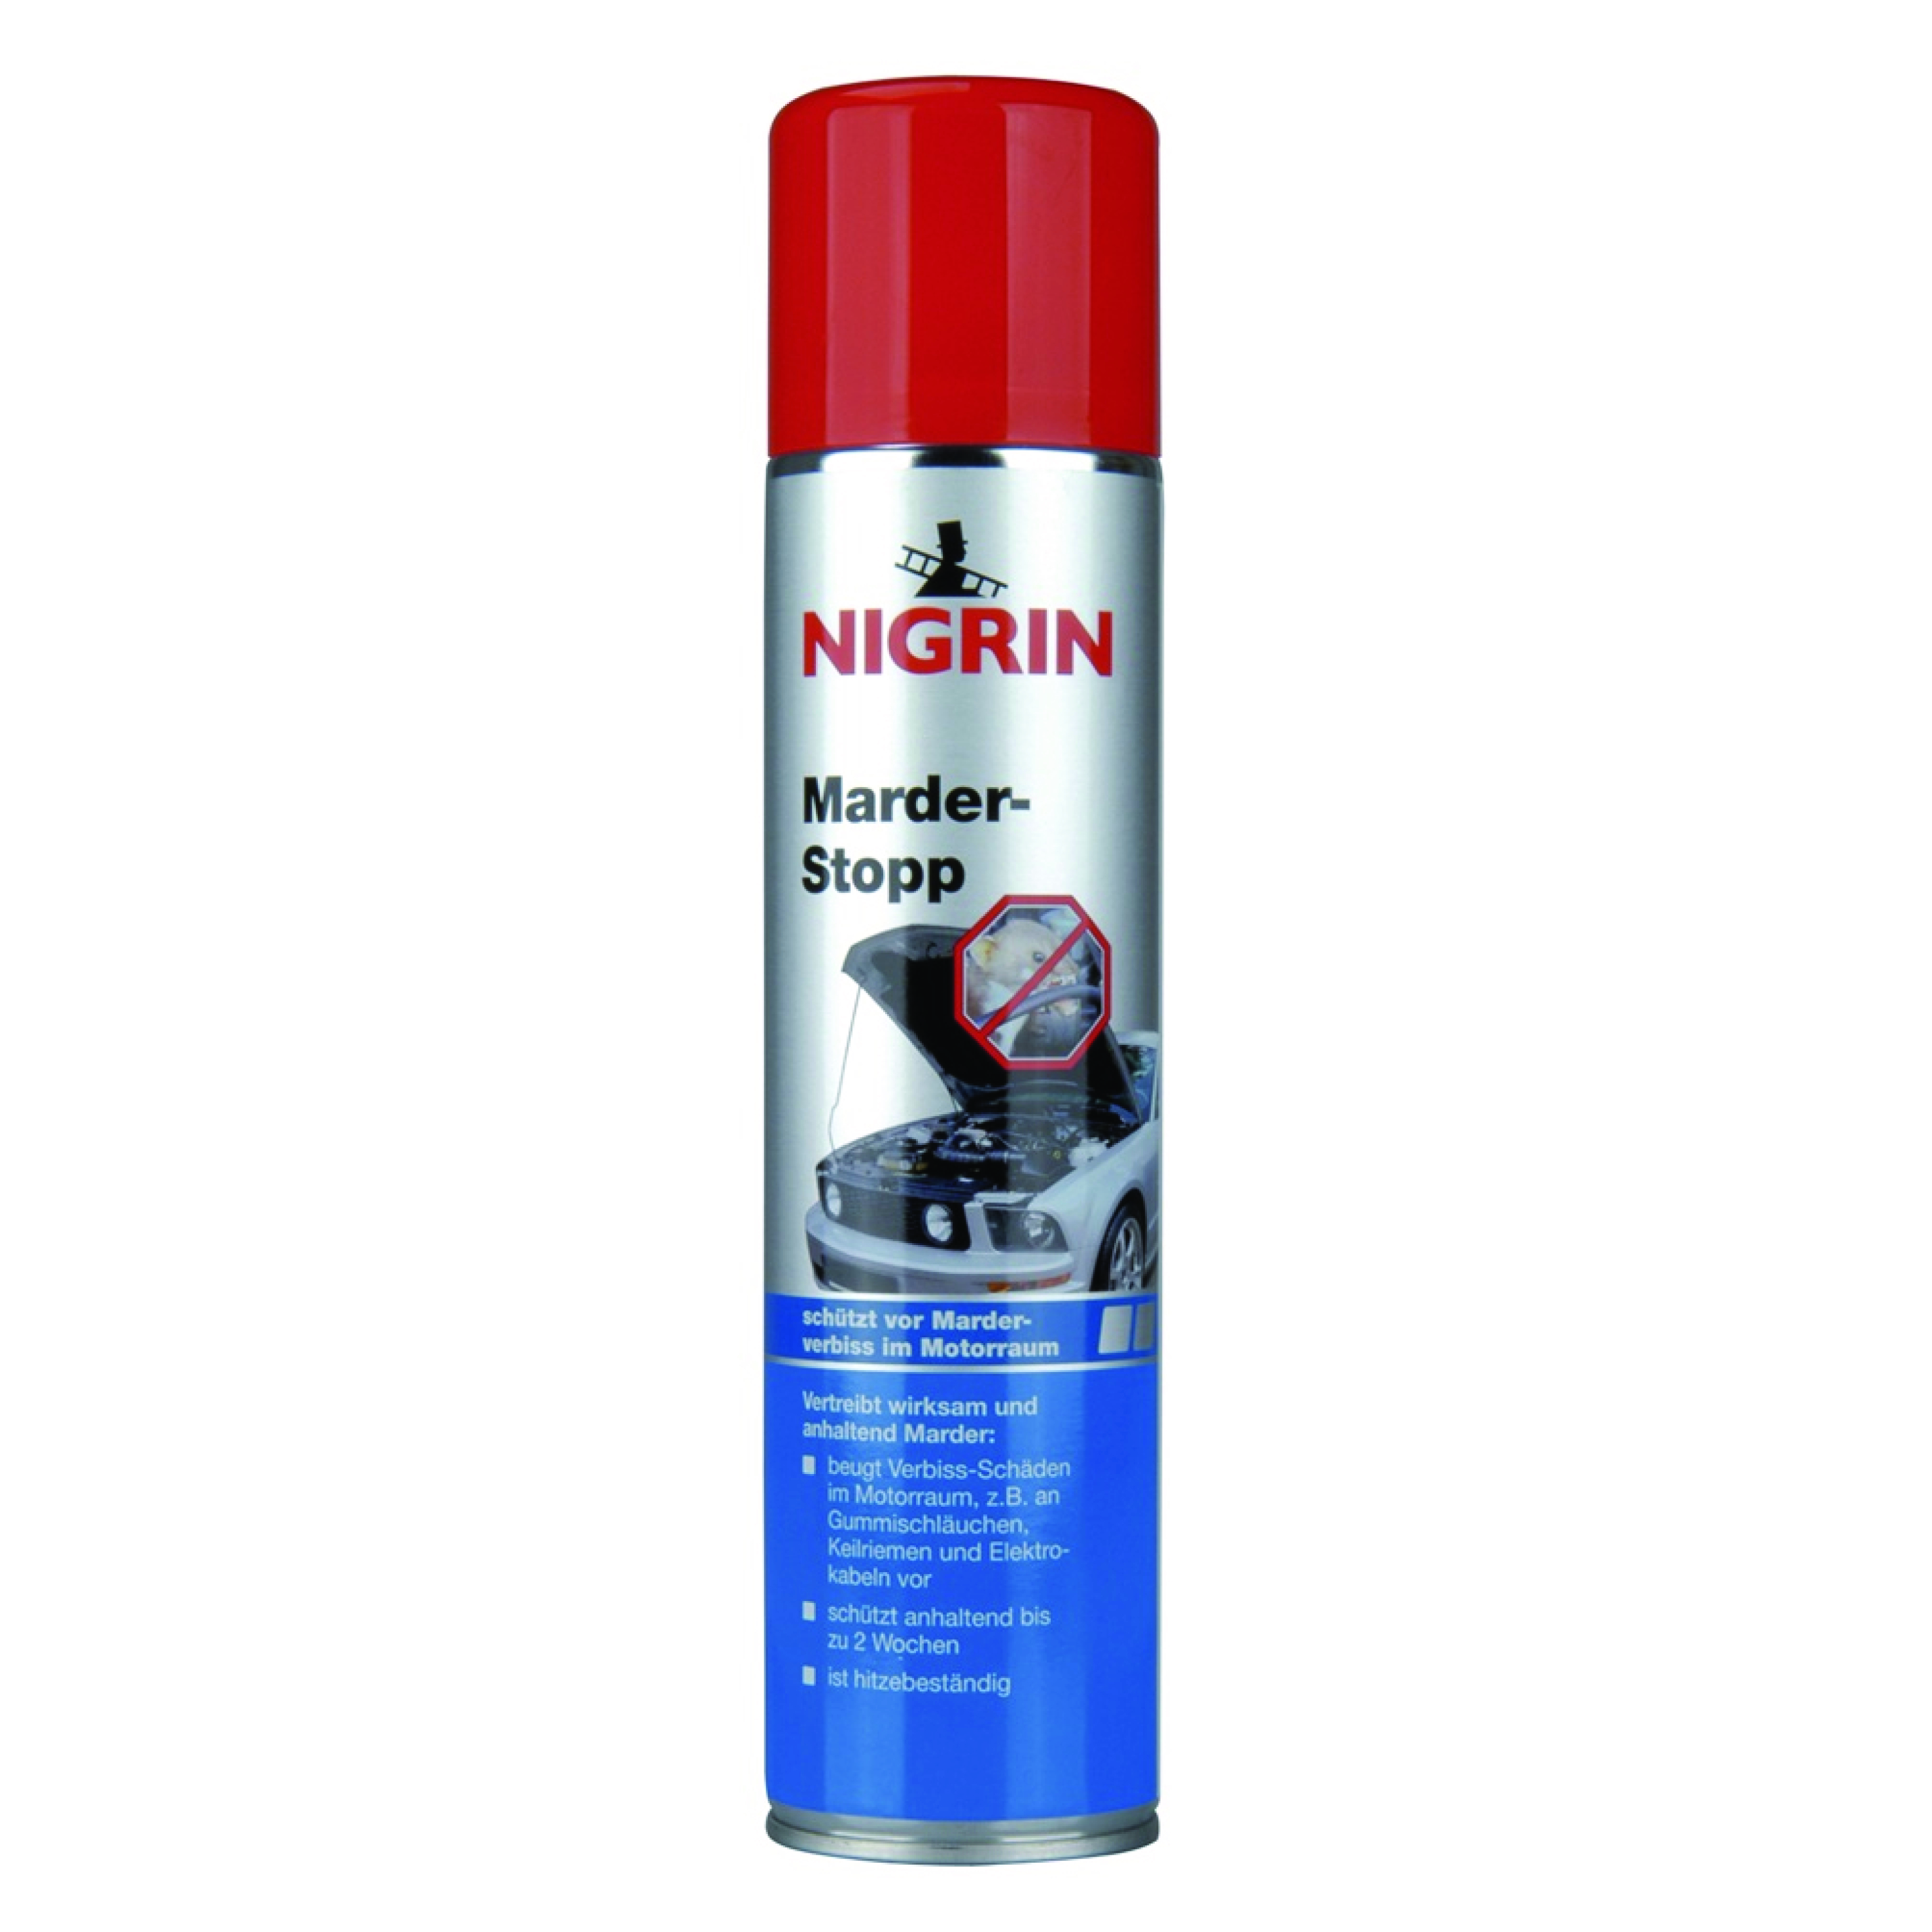 INTERUNION Marder-Stop Spray NIGRIN 400ml 